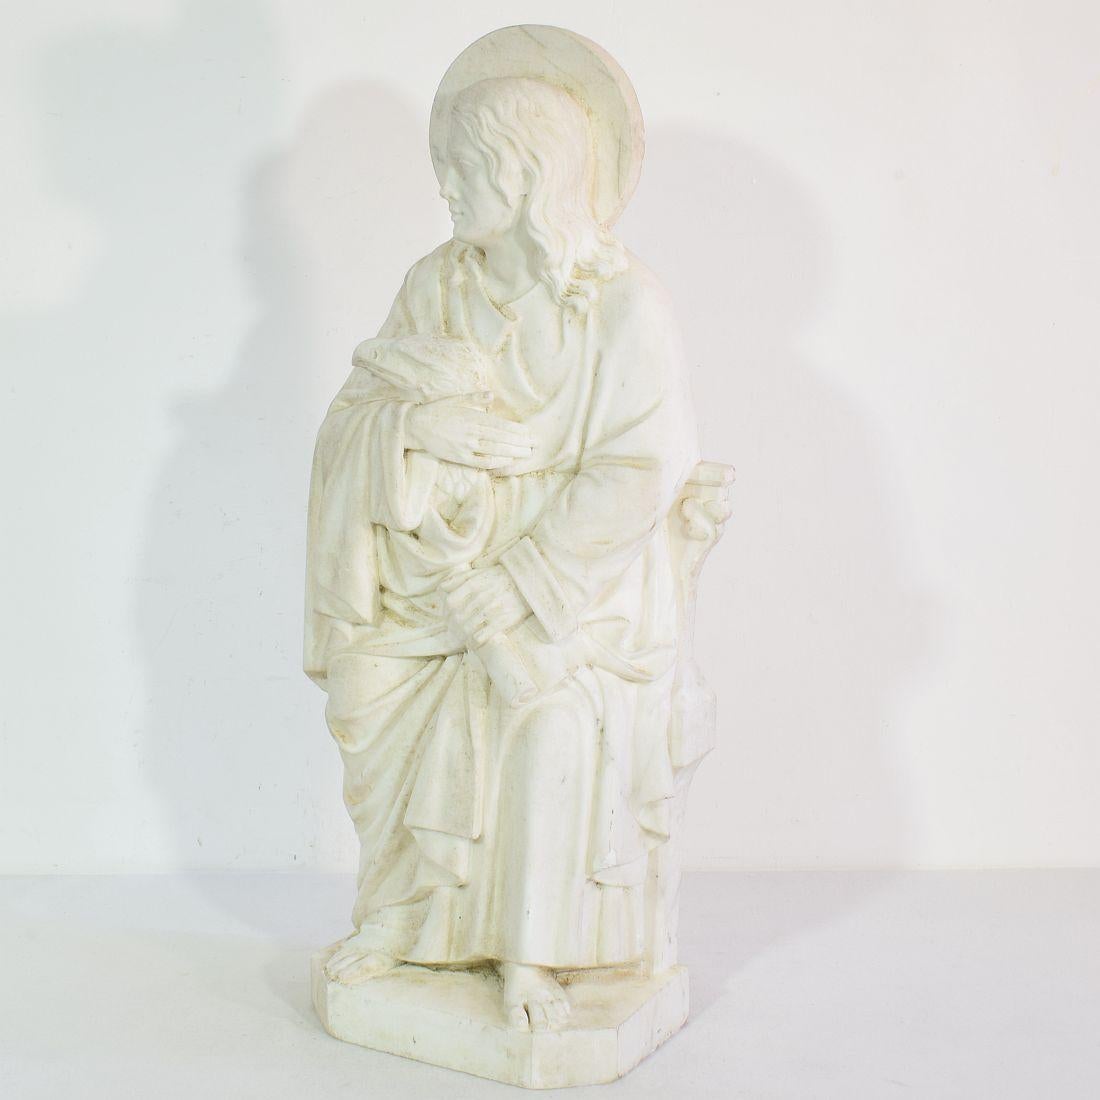 Belle statue de marbre blanc érodé représentant Saint John l'évangéliste.

La tradition chrétienne dit que Jean l'Évangéliste était Jean l'Apôtre. L'apôtre Jean était l'un des 